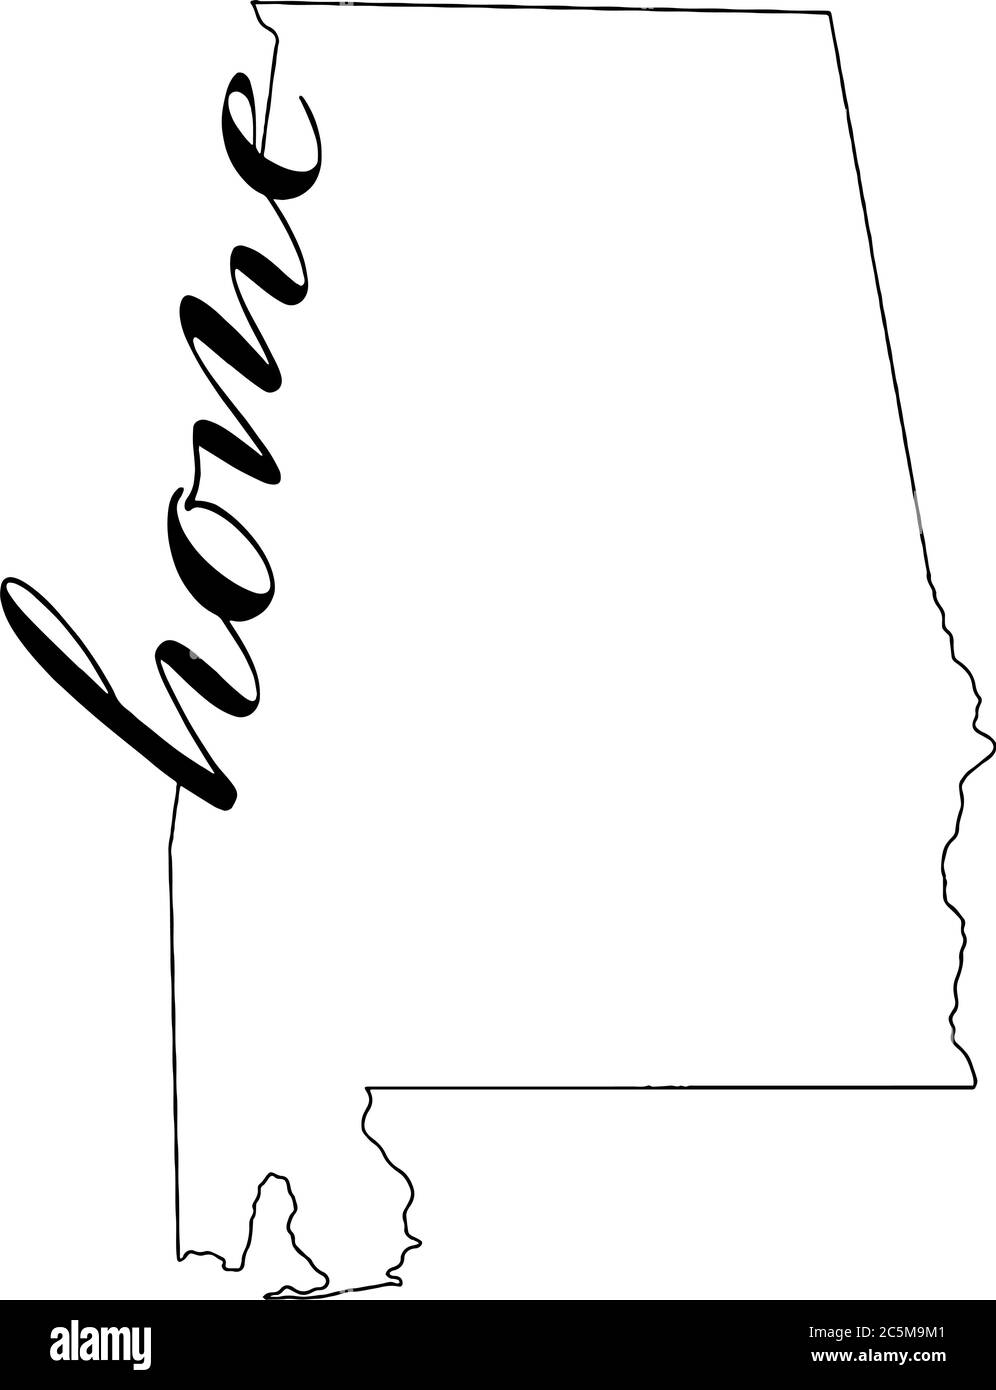 Alabama Zustand skizzieren mit Haus in der Skizze geschrieben Stock Vektor